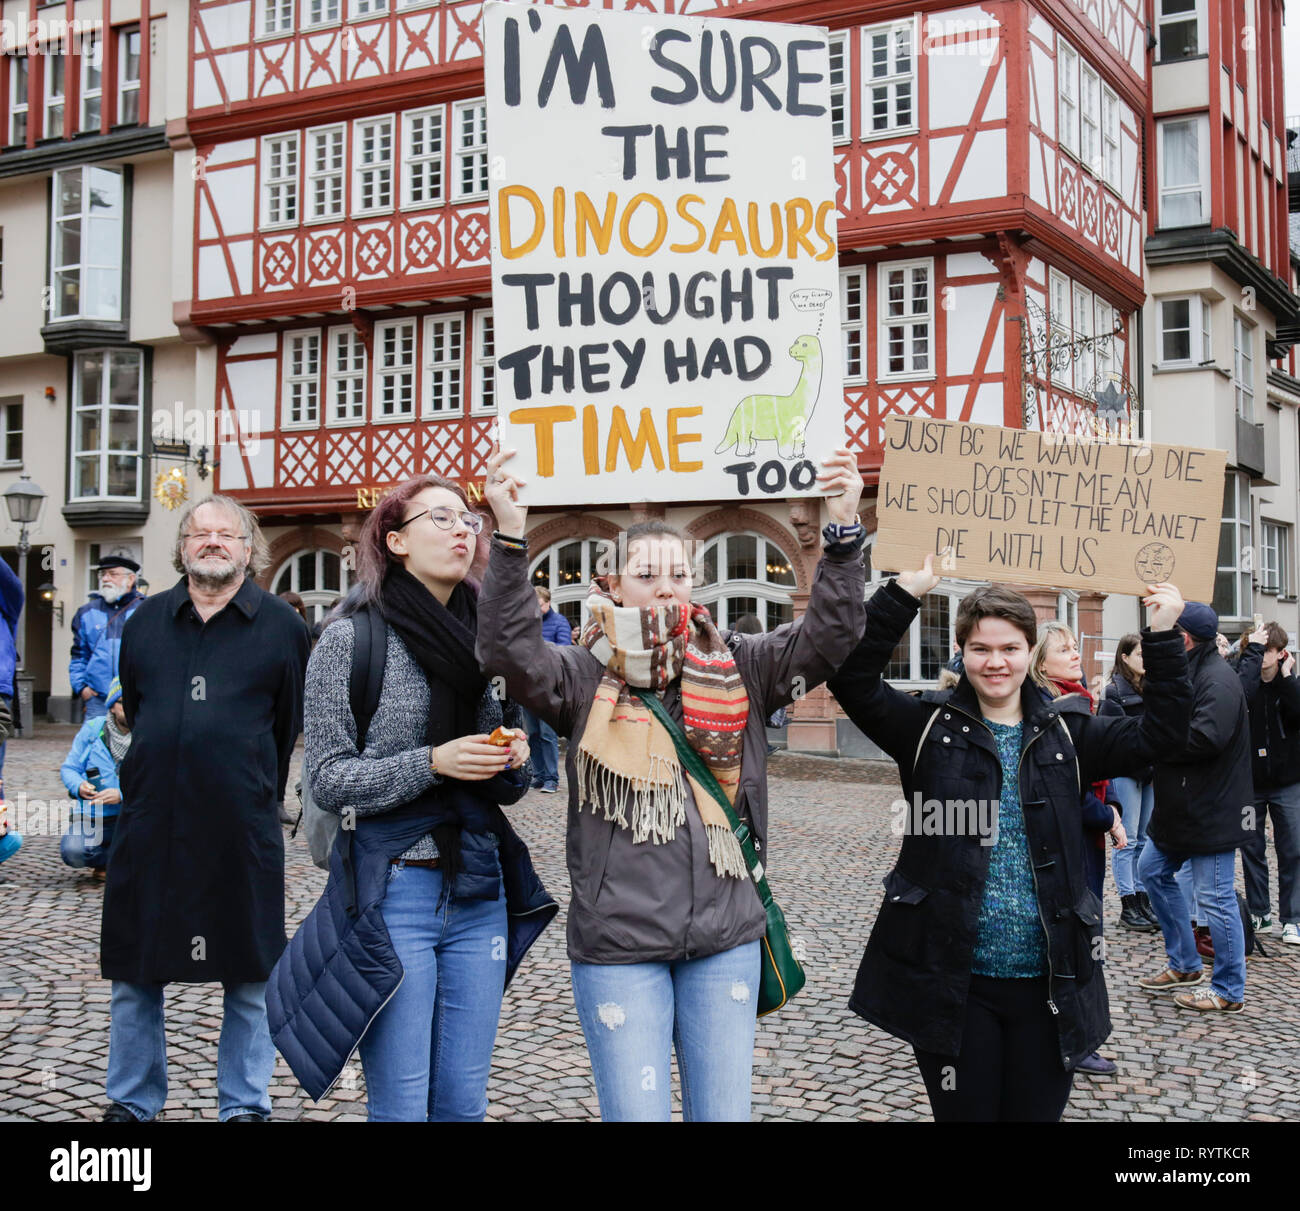 Francoforte, Germania. Il 15 marzo 2019. Un manifestante tiene un cartello che recita "Sono sicuro che i dinosauri erano troppo tempo". Oltre 6 mila persone (per la maggior parte degli alunni che hanno saltato la scuola per prendere parte alla protesta) hanno marciato attraverso Francoforte, per protestare contro il cambiamento climatico e per l' introduzione di misure contro di essa. La protesta è stata parte del clima in tutto il mondo il giorno di sciopero dal movimento FridaysForFuture, iniziato da Greta Thunberg in Svezia. Credito: Michael Debets/Alamy Live News Foto Stock